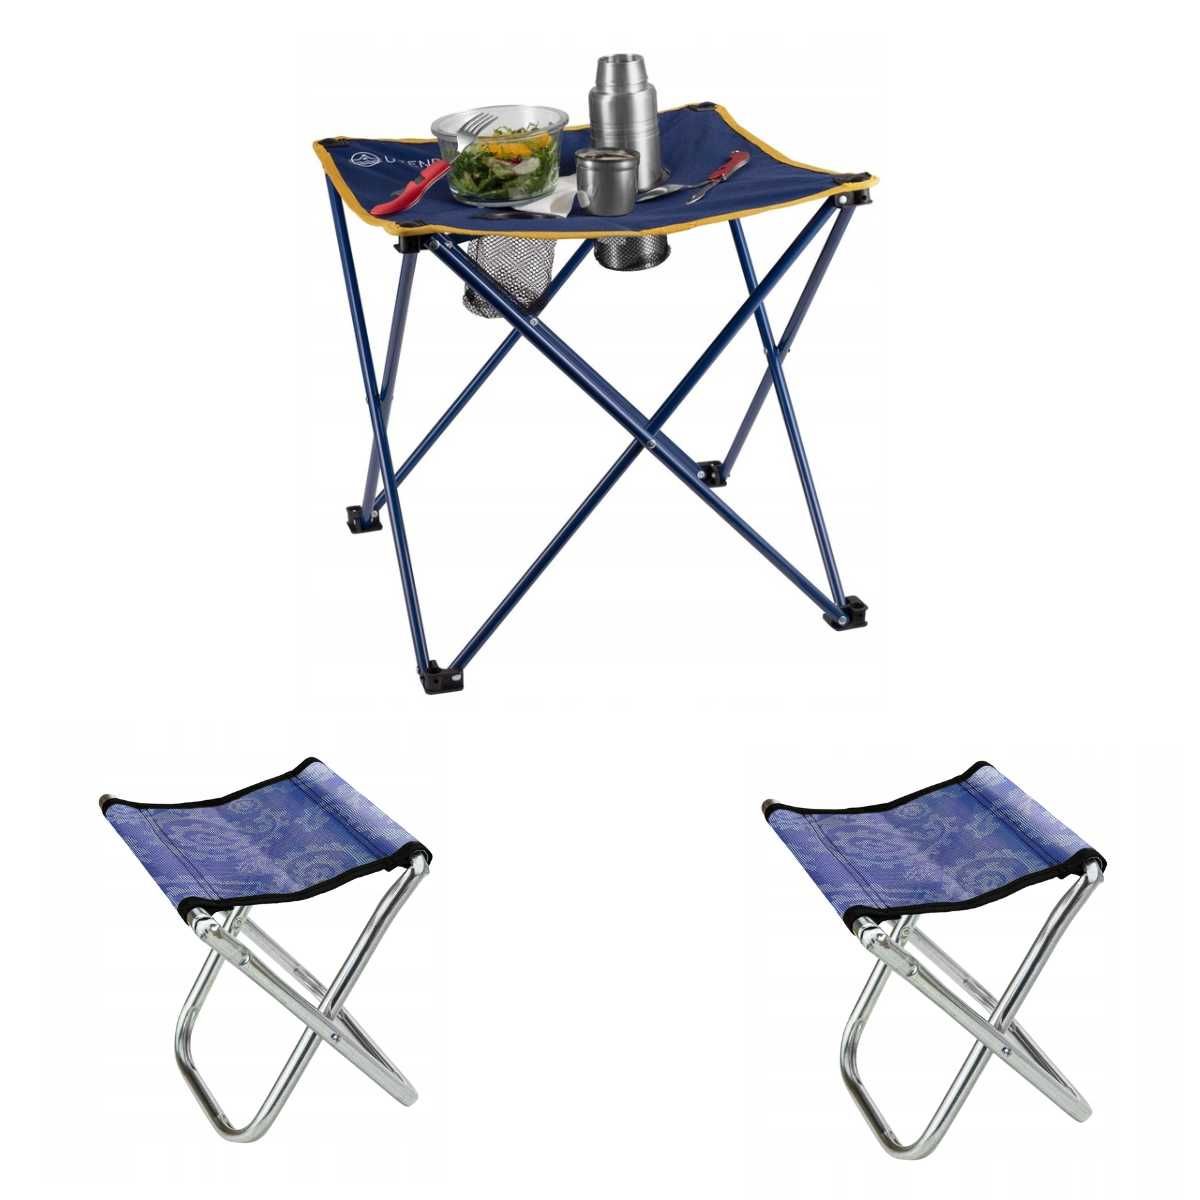 NOWY Zestaw mebli turystycznych stół krzesła składane leżaki stolik